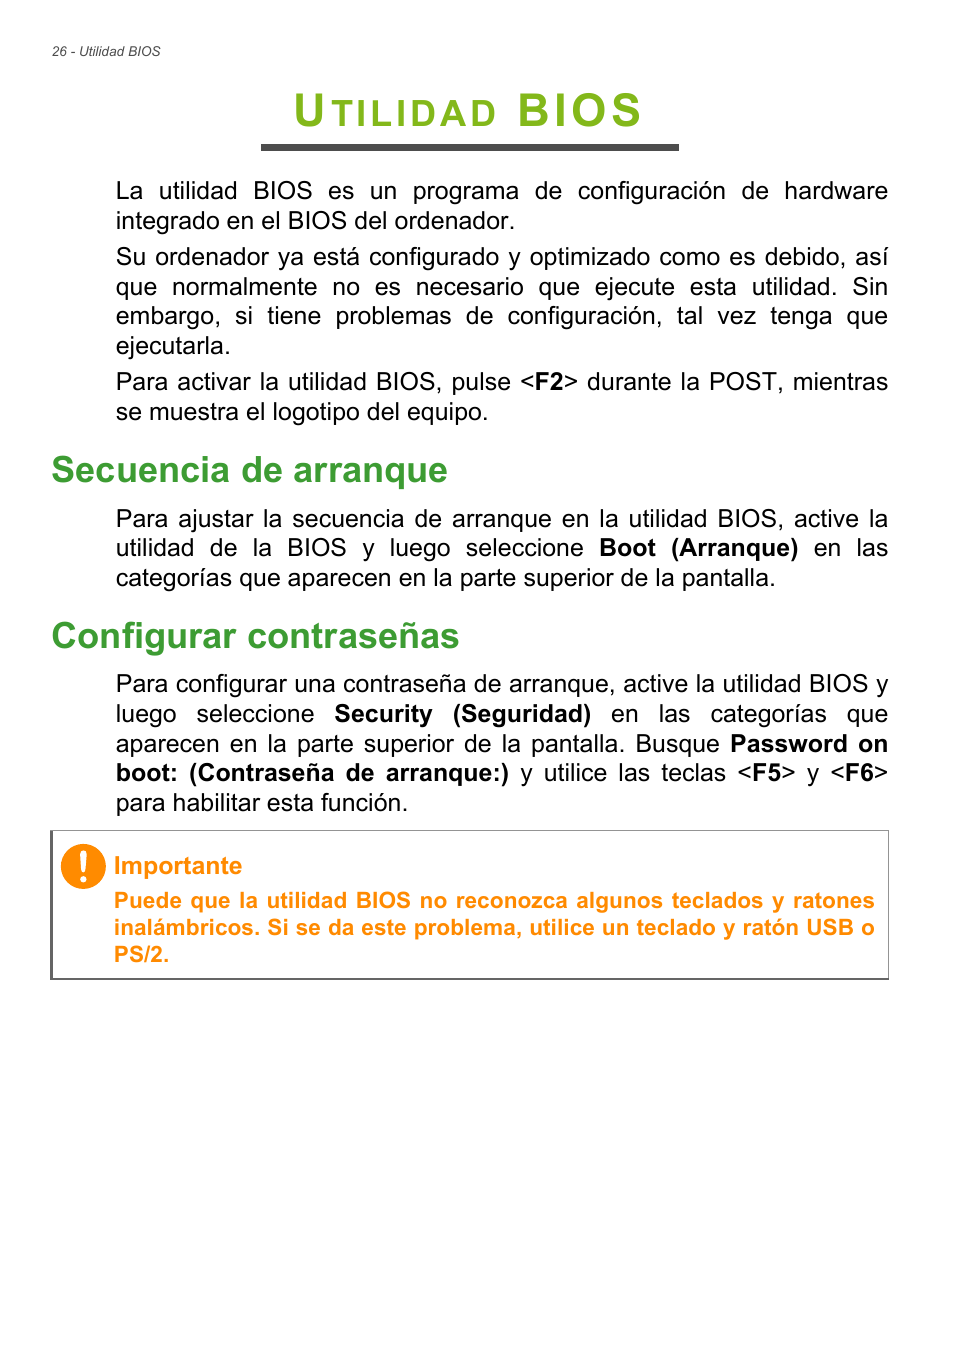 desconocido Cap Arriesgado Utilidad bios, Secuencia de arranque, Configurar contraseñas | Acer Aspire  TC-605 Manual del usuario | Página 26 / 67 | Original